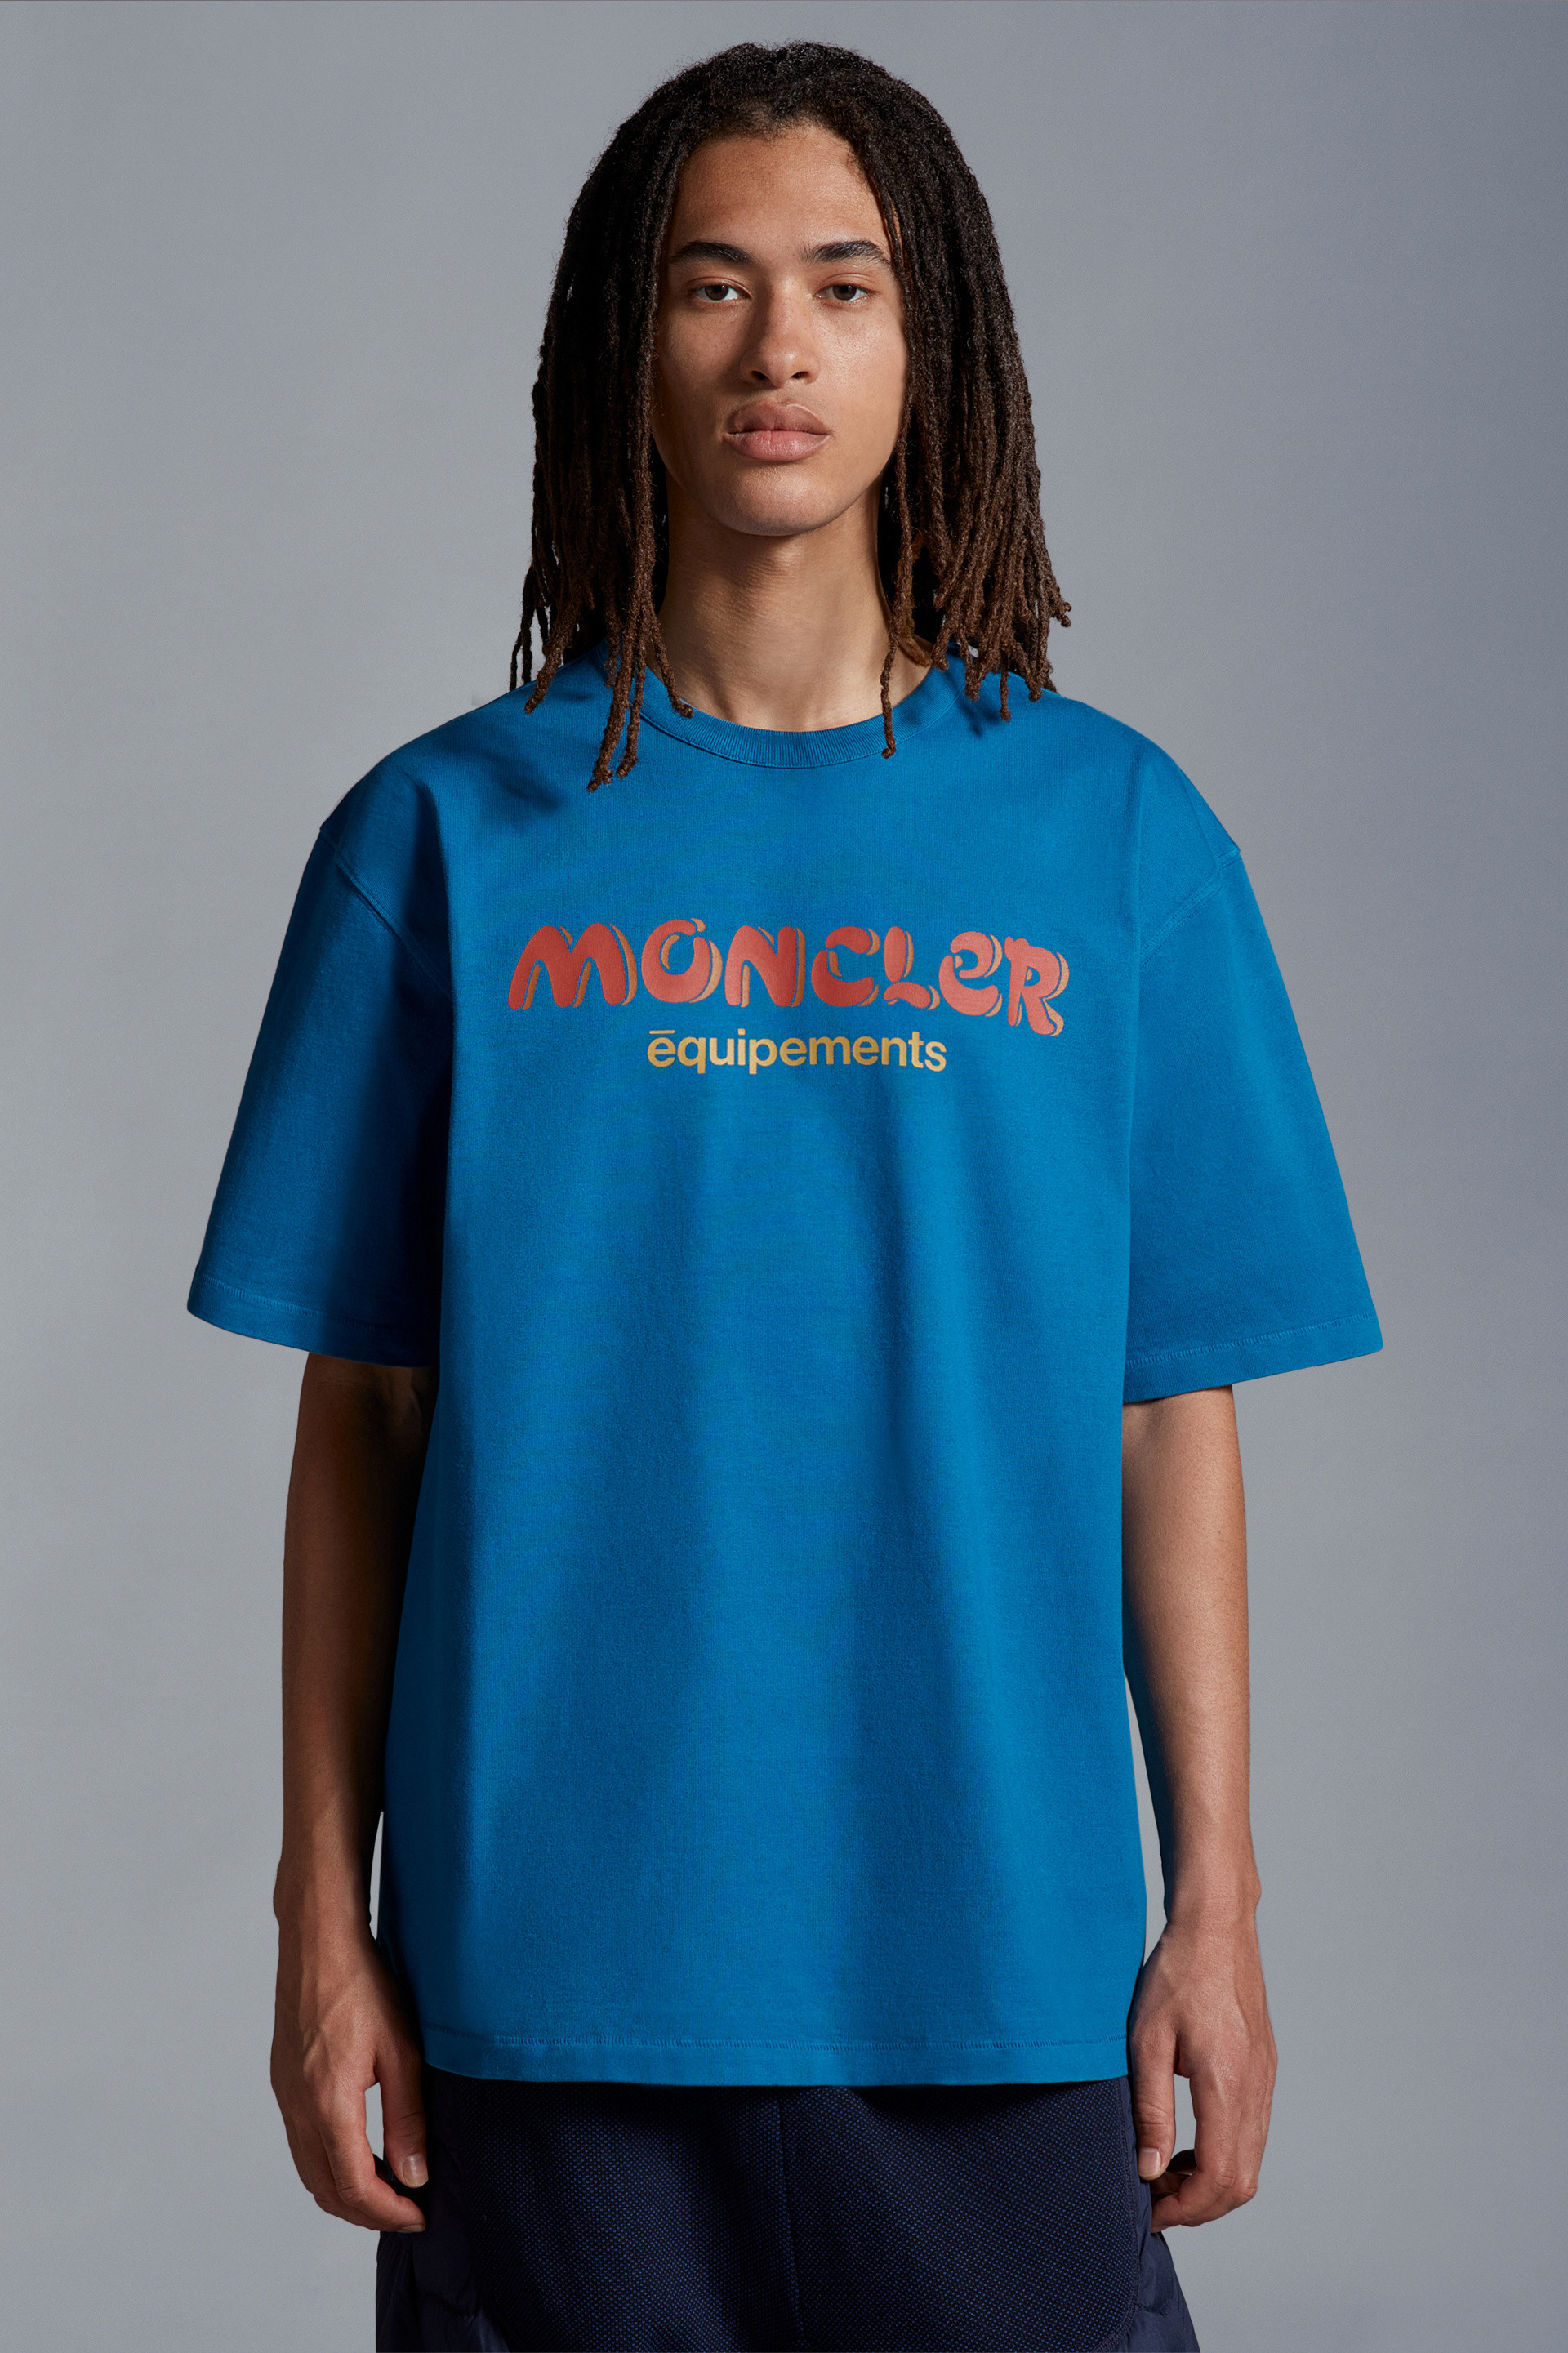 ブルー Tシャツ : Moncler x Salehe Bembury 向けの Genius | モンクレール